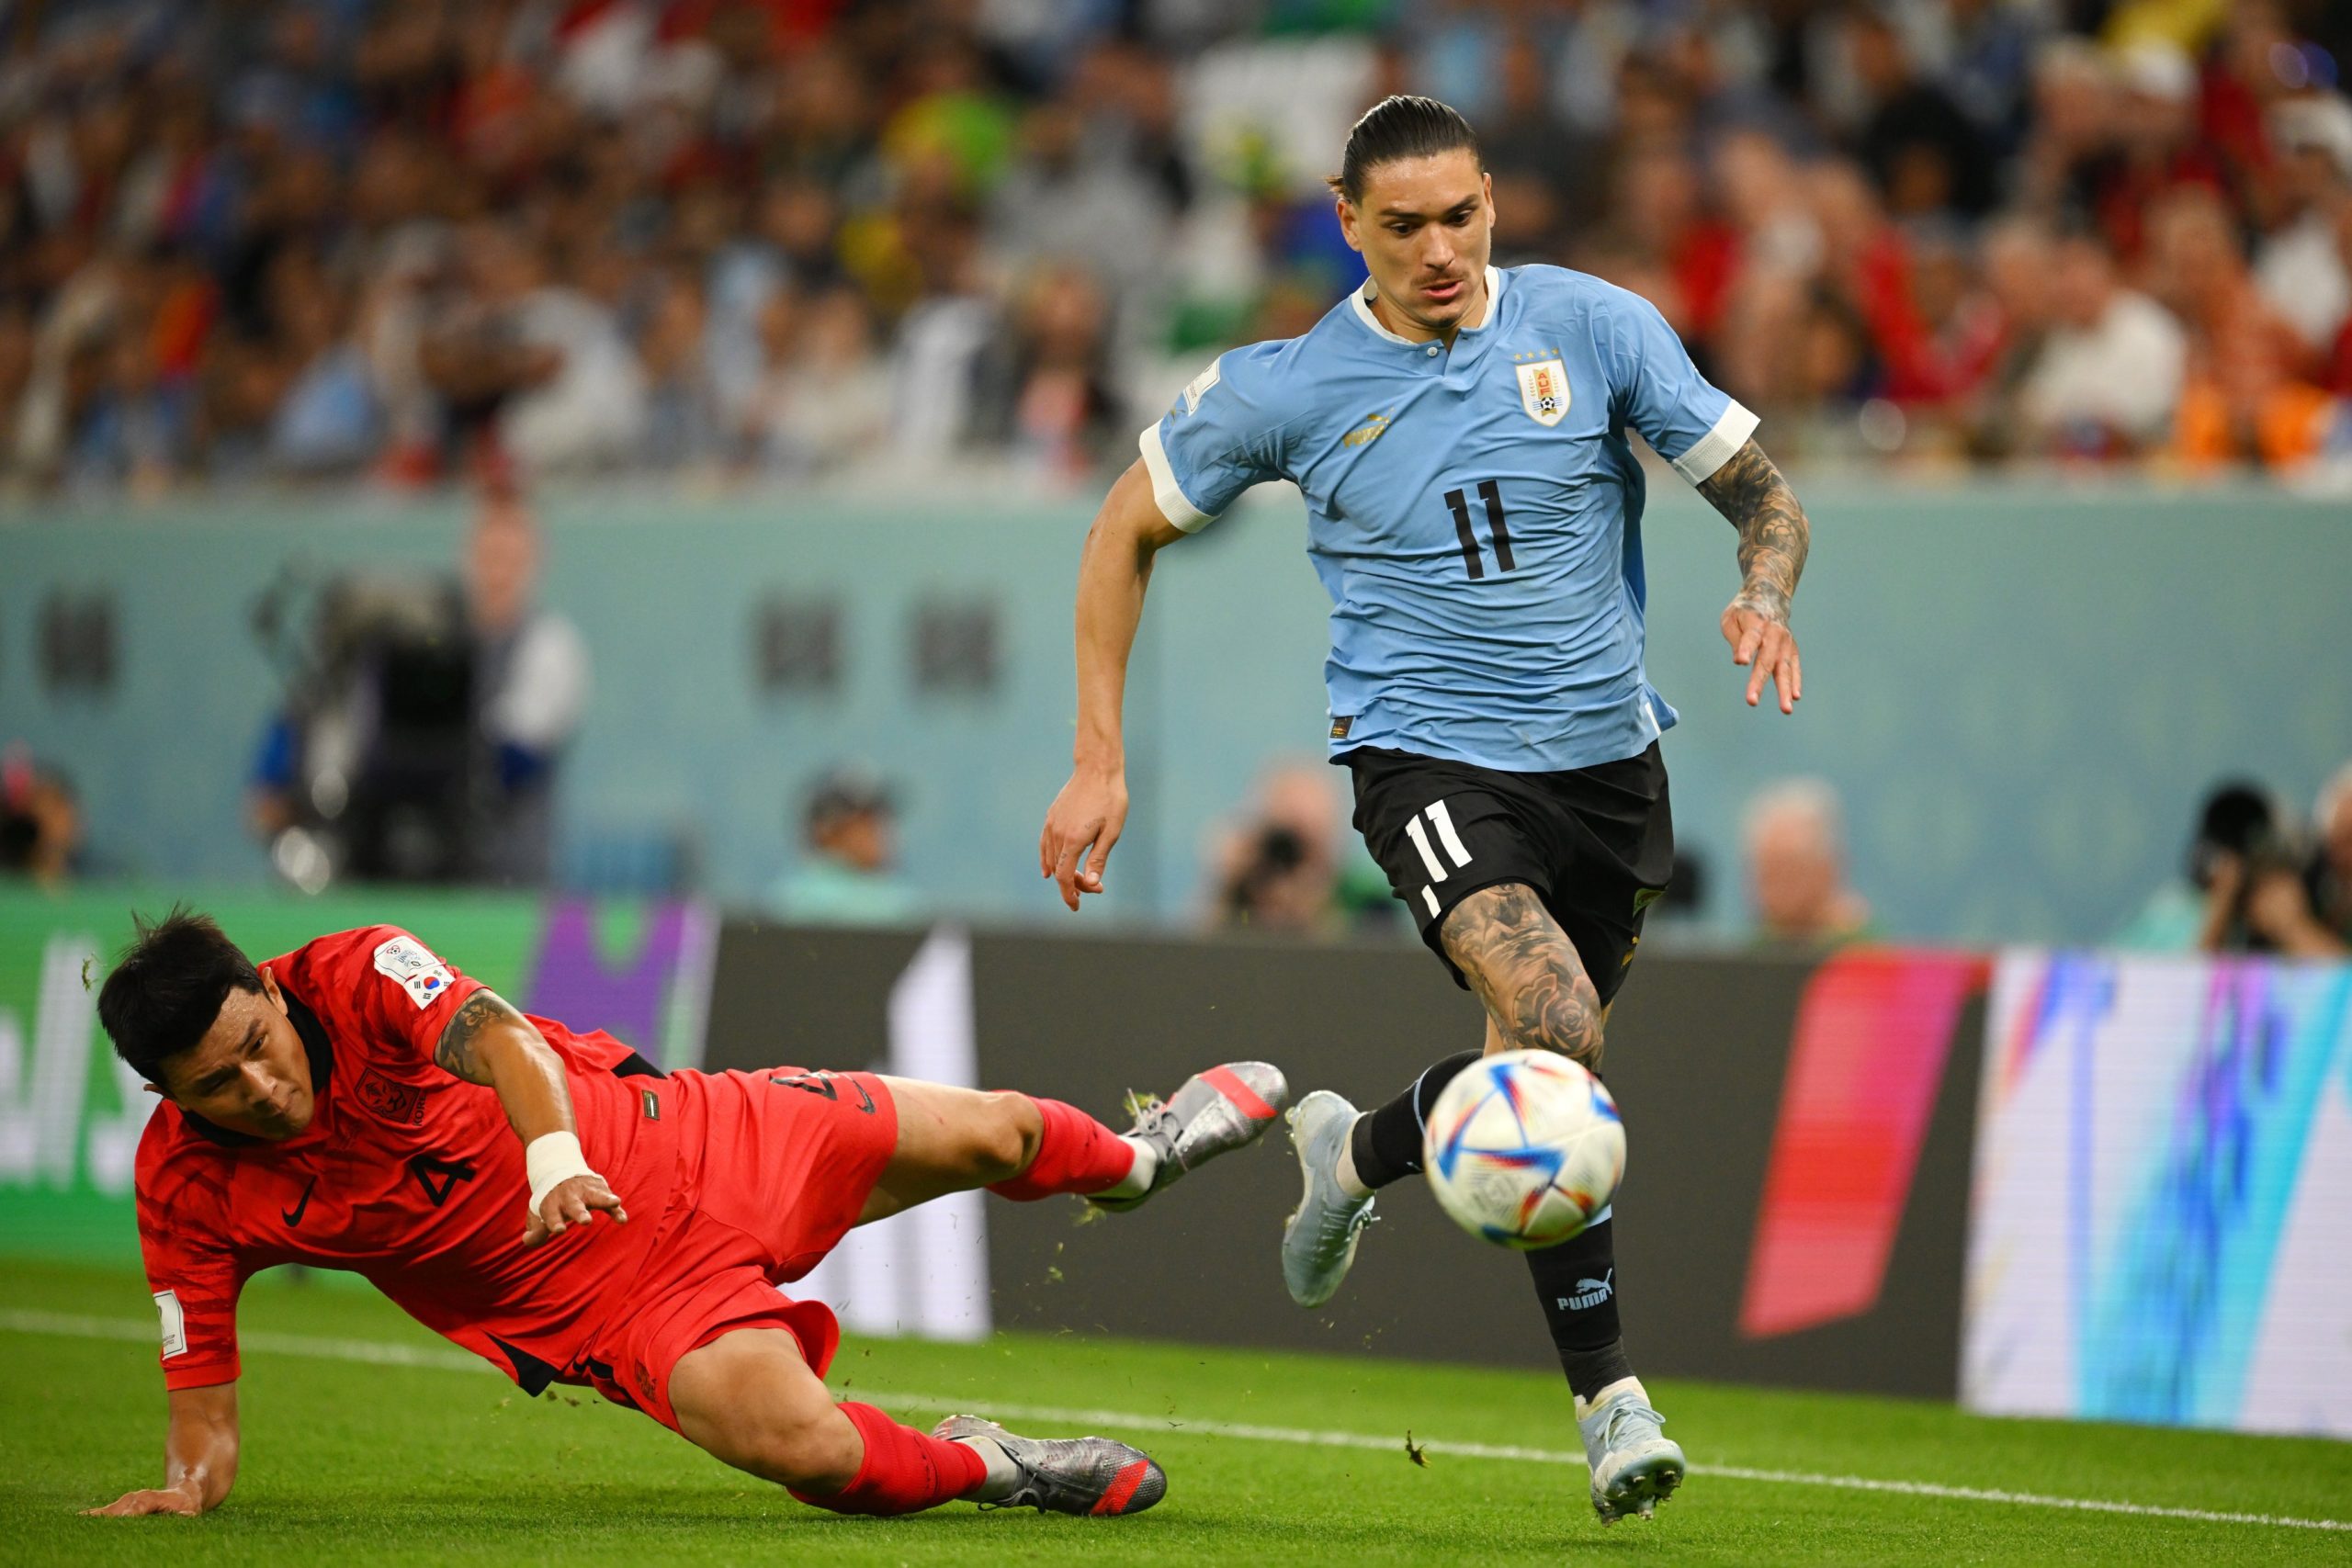 Uruguay - La Celeste - Primer partido de Uruguay en Qatar 2022 24